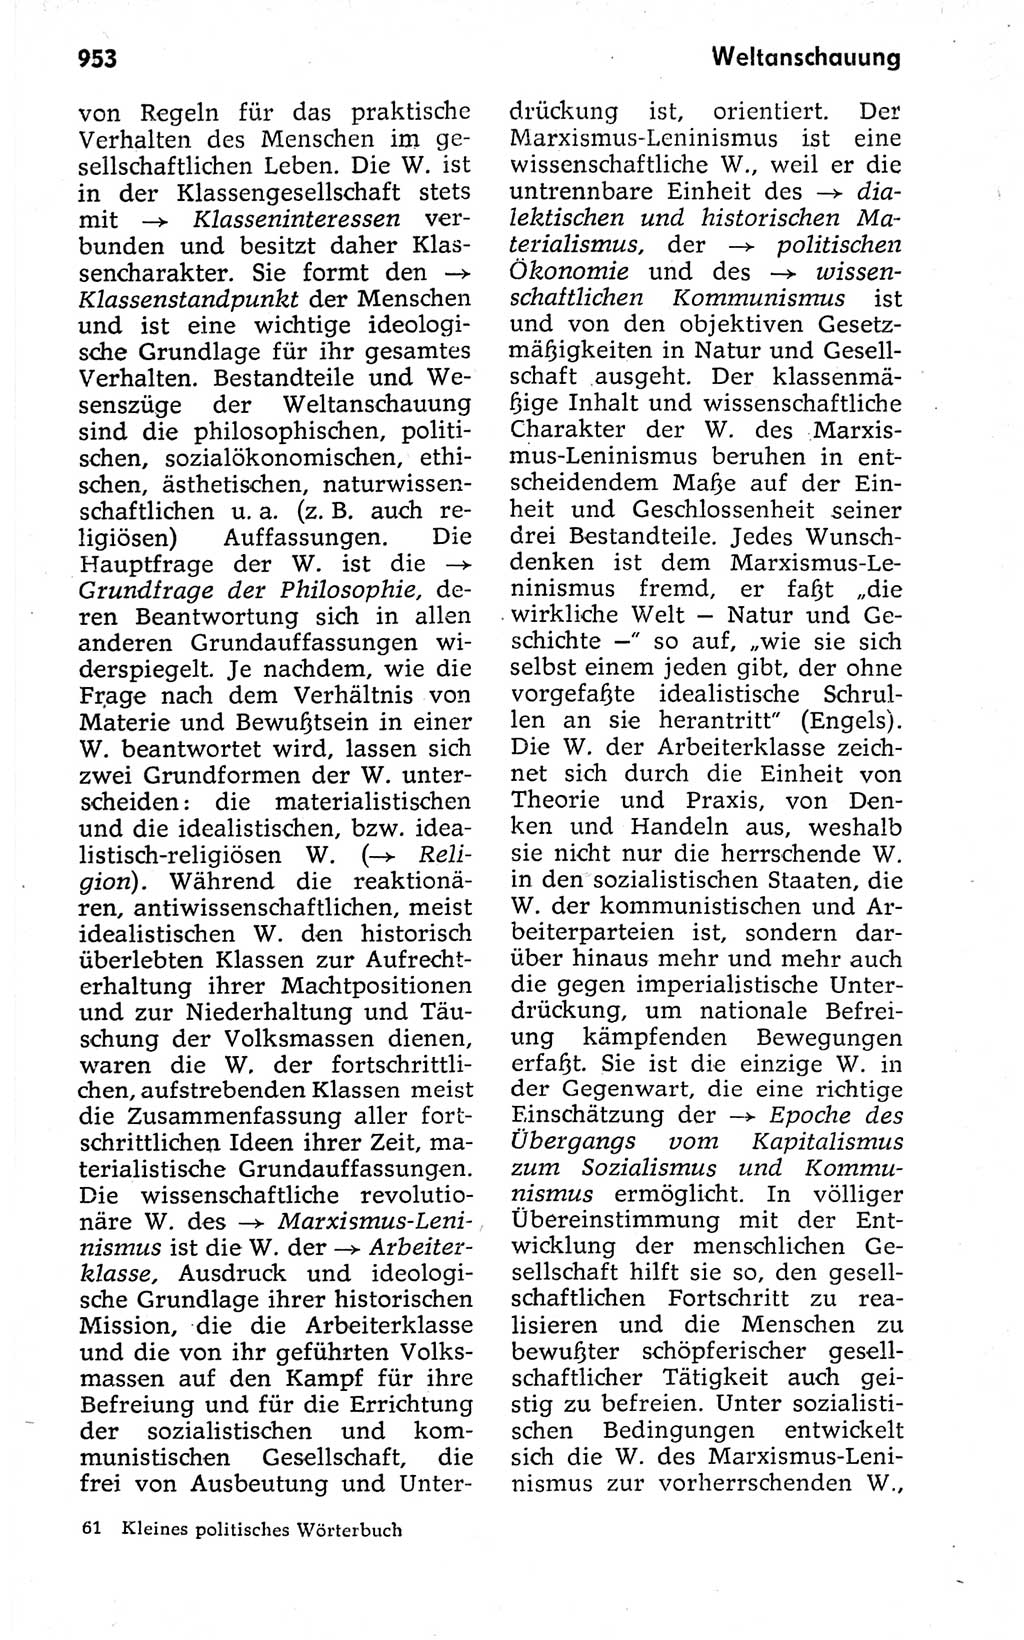 Kleines politisches Wörterbuch [Deutsche Demokratische Republik (DDR)] 1973, Seite 953 (Kl. pol. Wb. DDR 1973, S. 953)